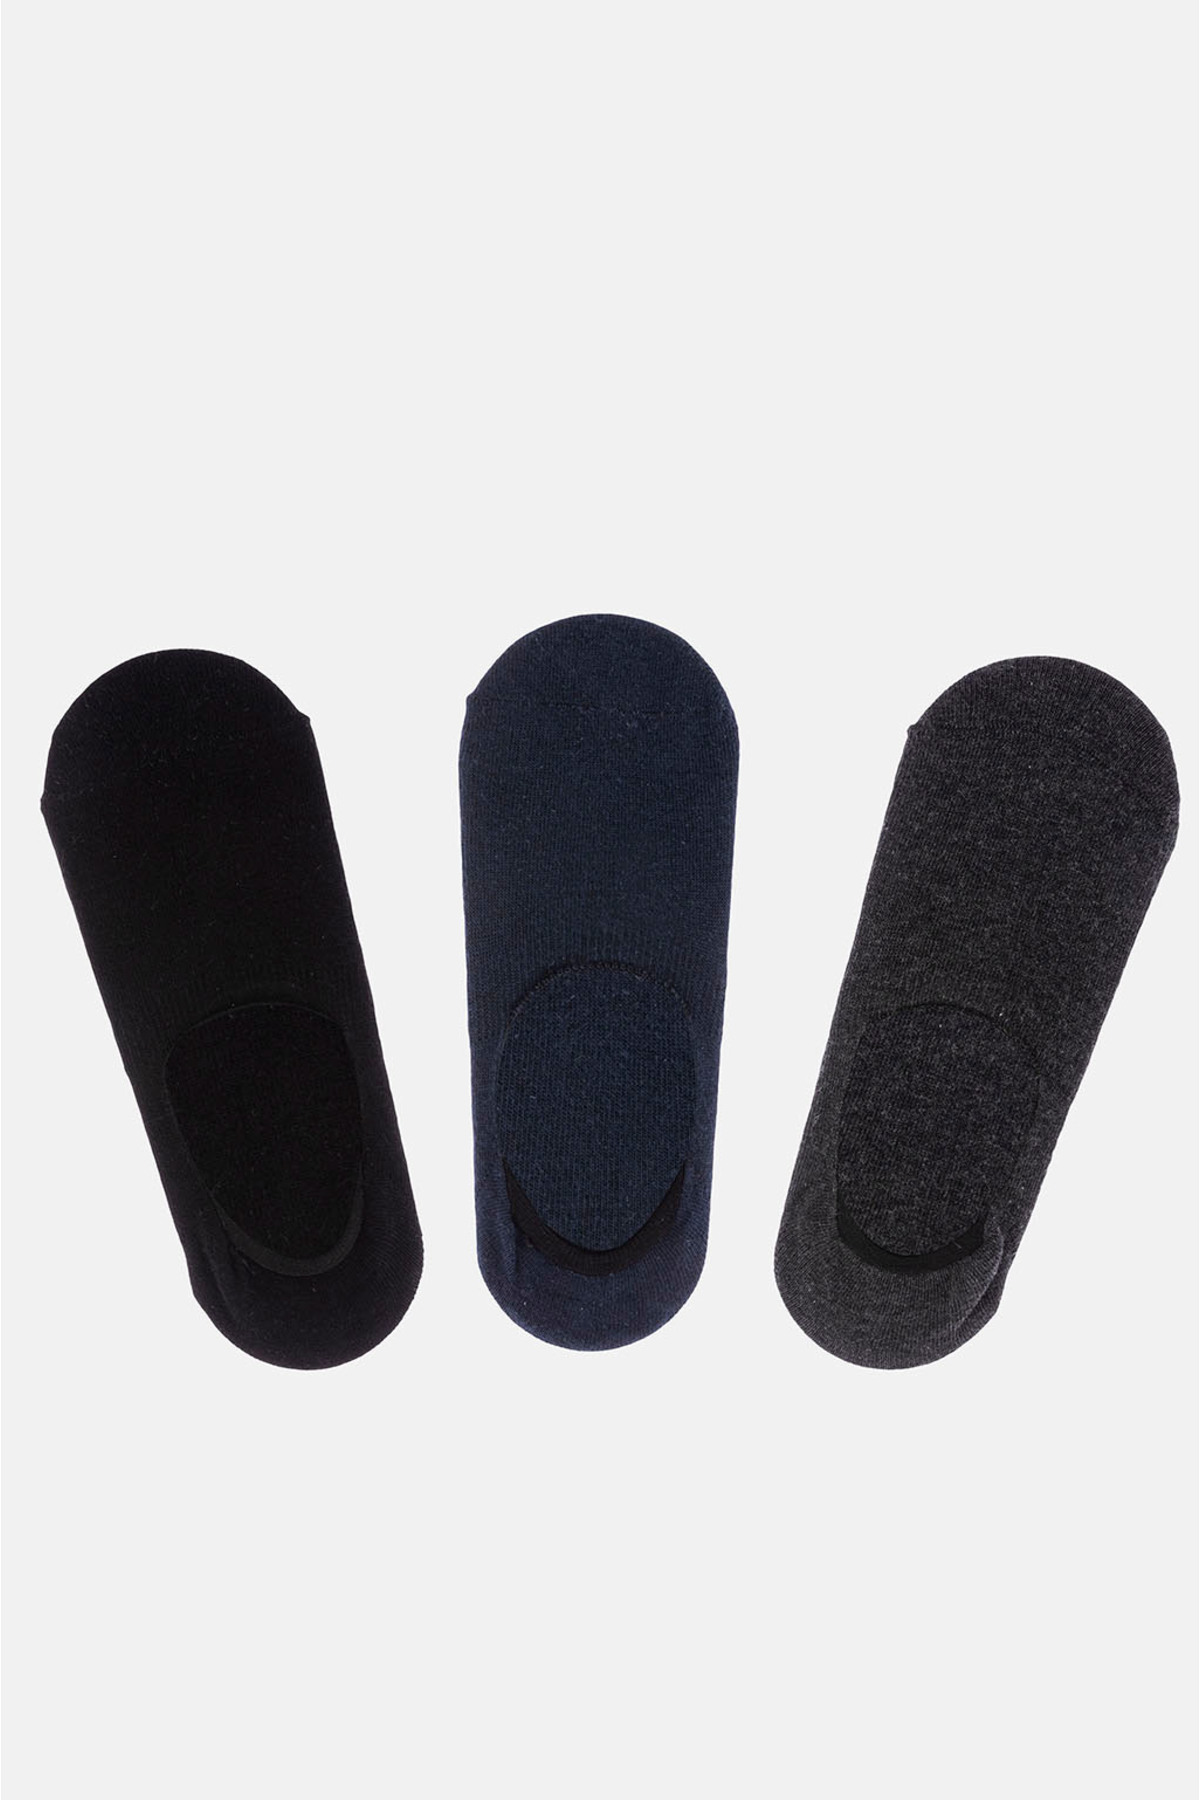 Levně Avva Men's Navy Blue 3-pieced Flatsocks Socks